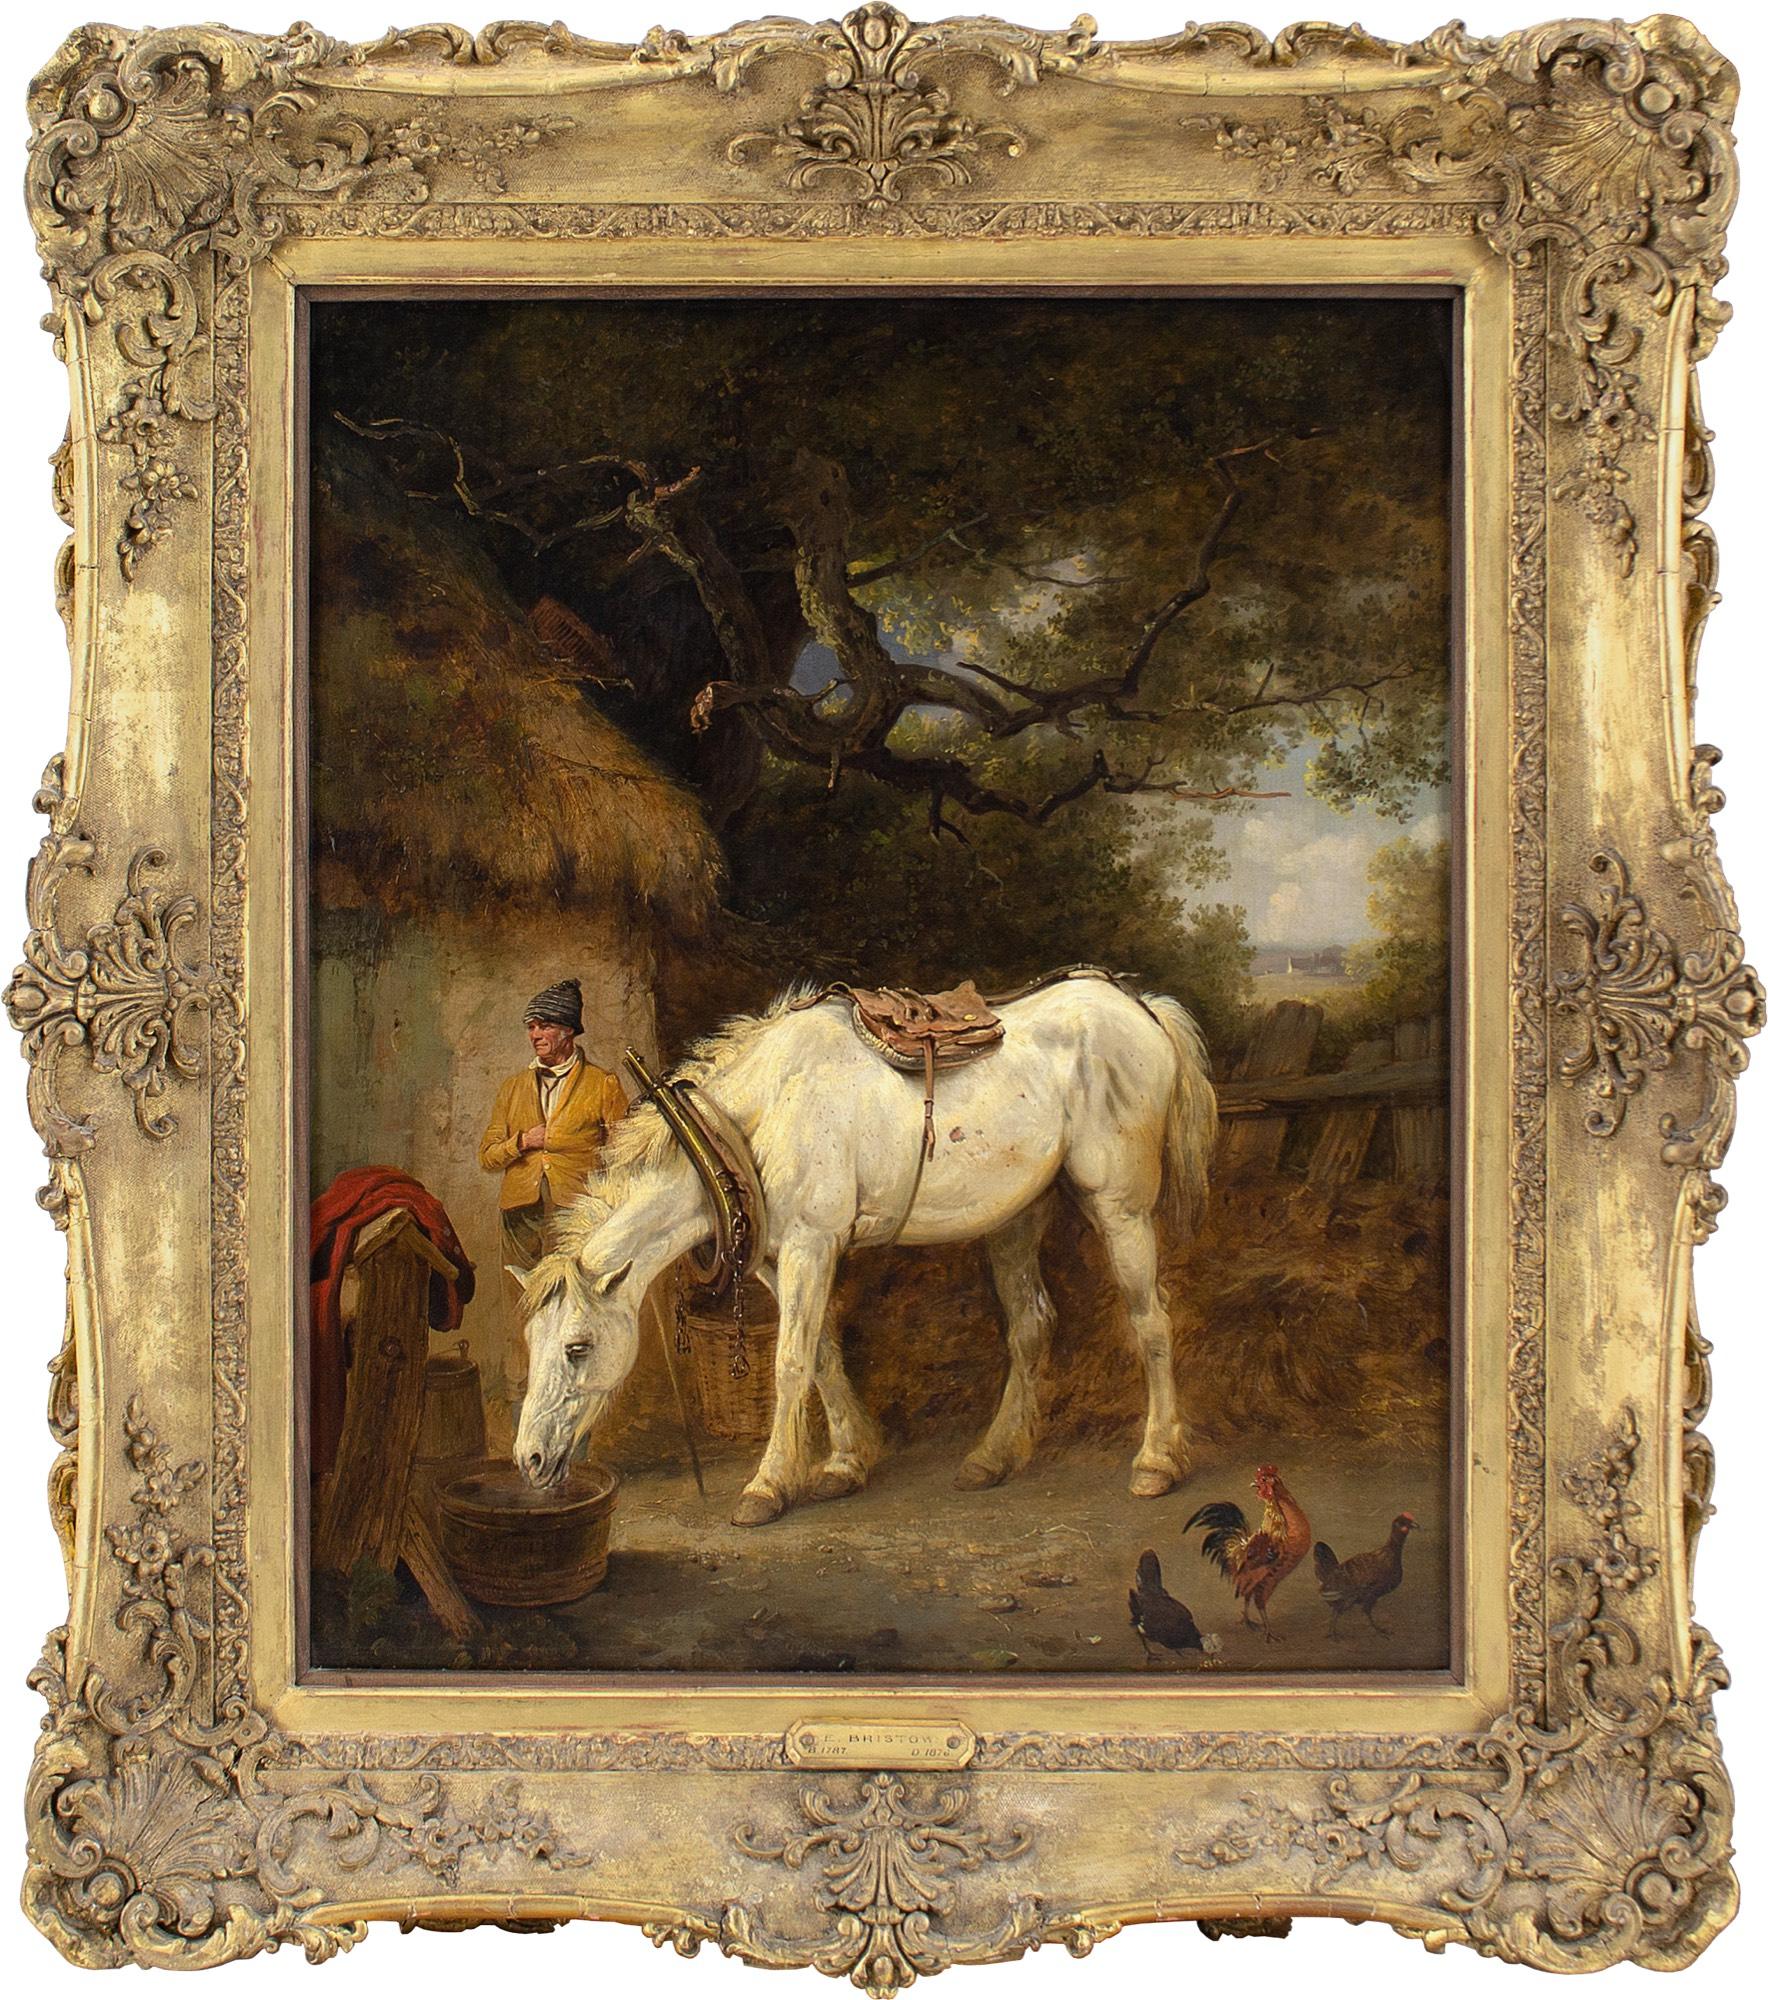 Dieses schöne Ölgemälde des britischen Künstlers Edmund Bristow (1787-1876) aus der Mitte des 19. Jahrhunderts zeigt ein Bauernhaus mit einer gesattelten weißen Stute, die Wasser holt, während ein Hahn zusieht. Ein älterer Mann steht daneben, unter